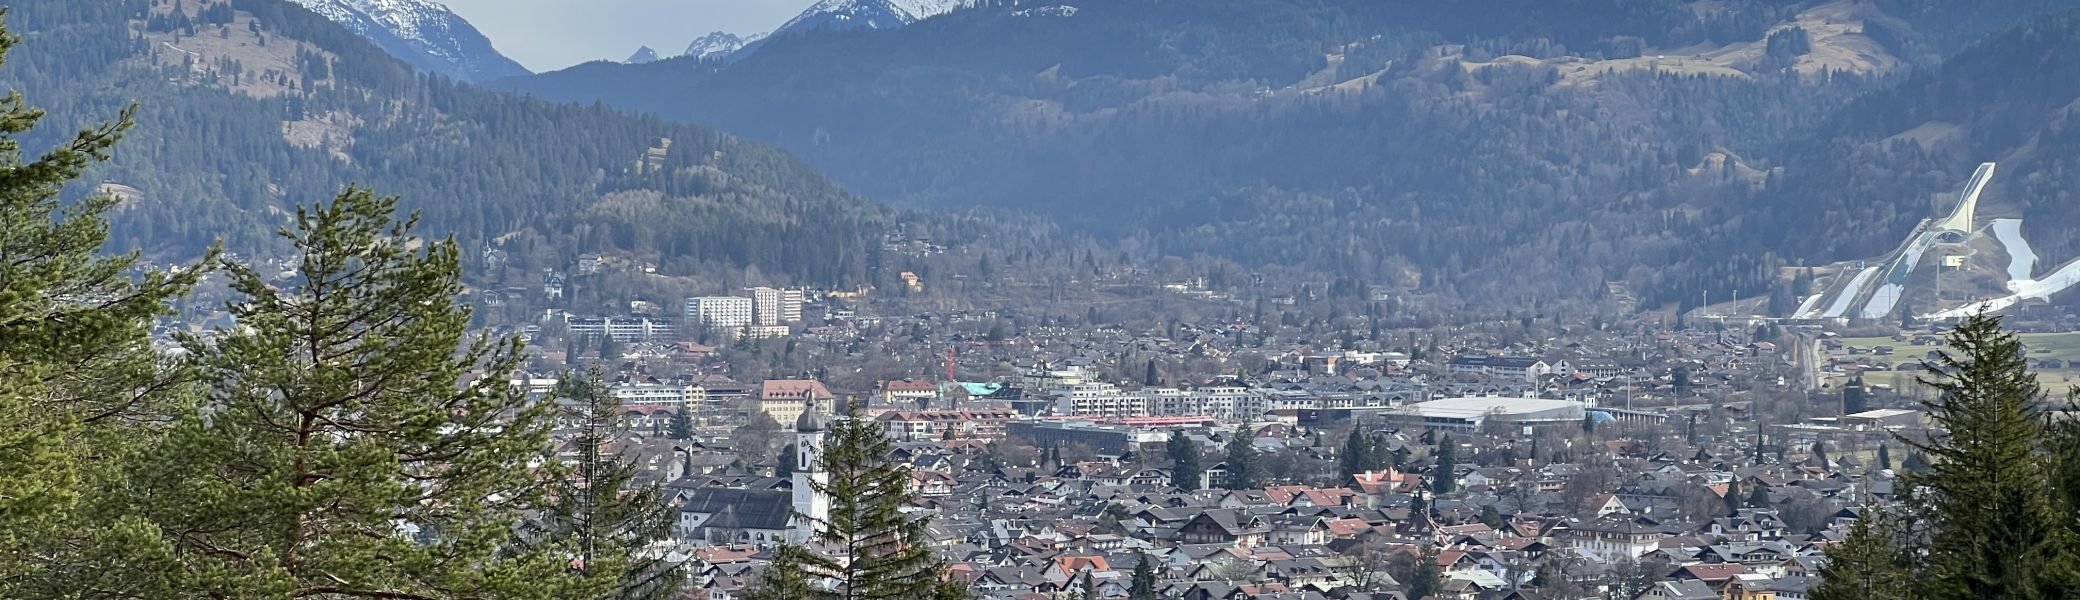 Blick auf Garmisch-Partenkirchen | © DAV Augsburg Senioren